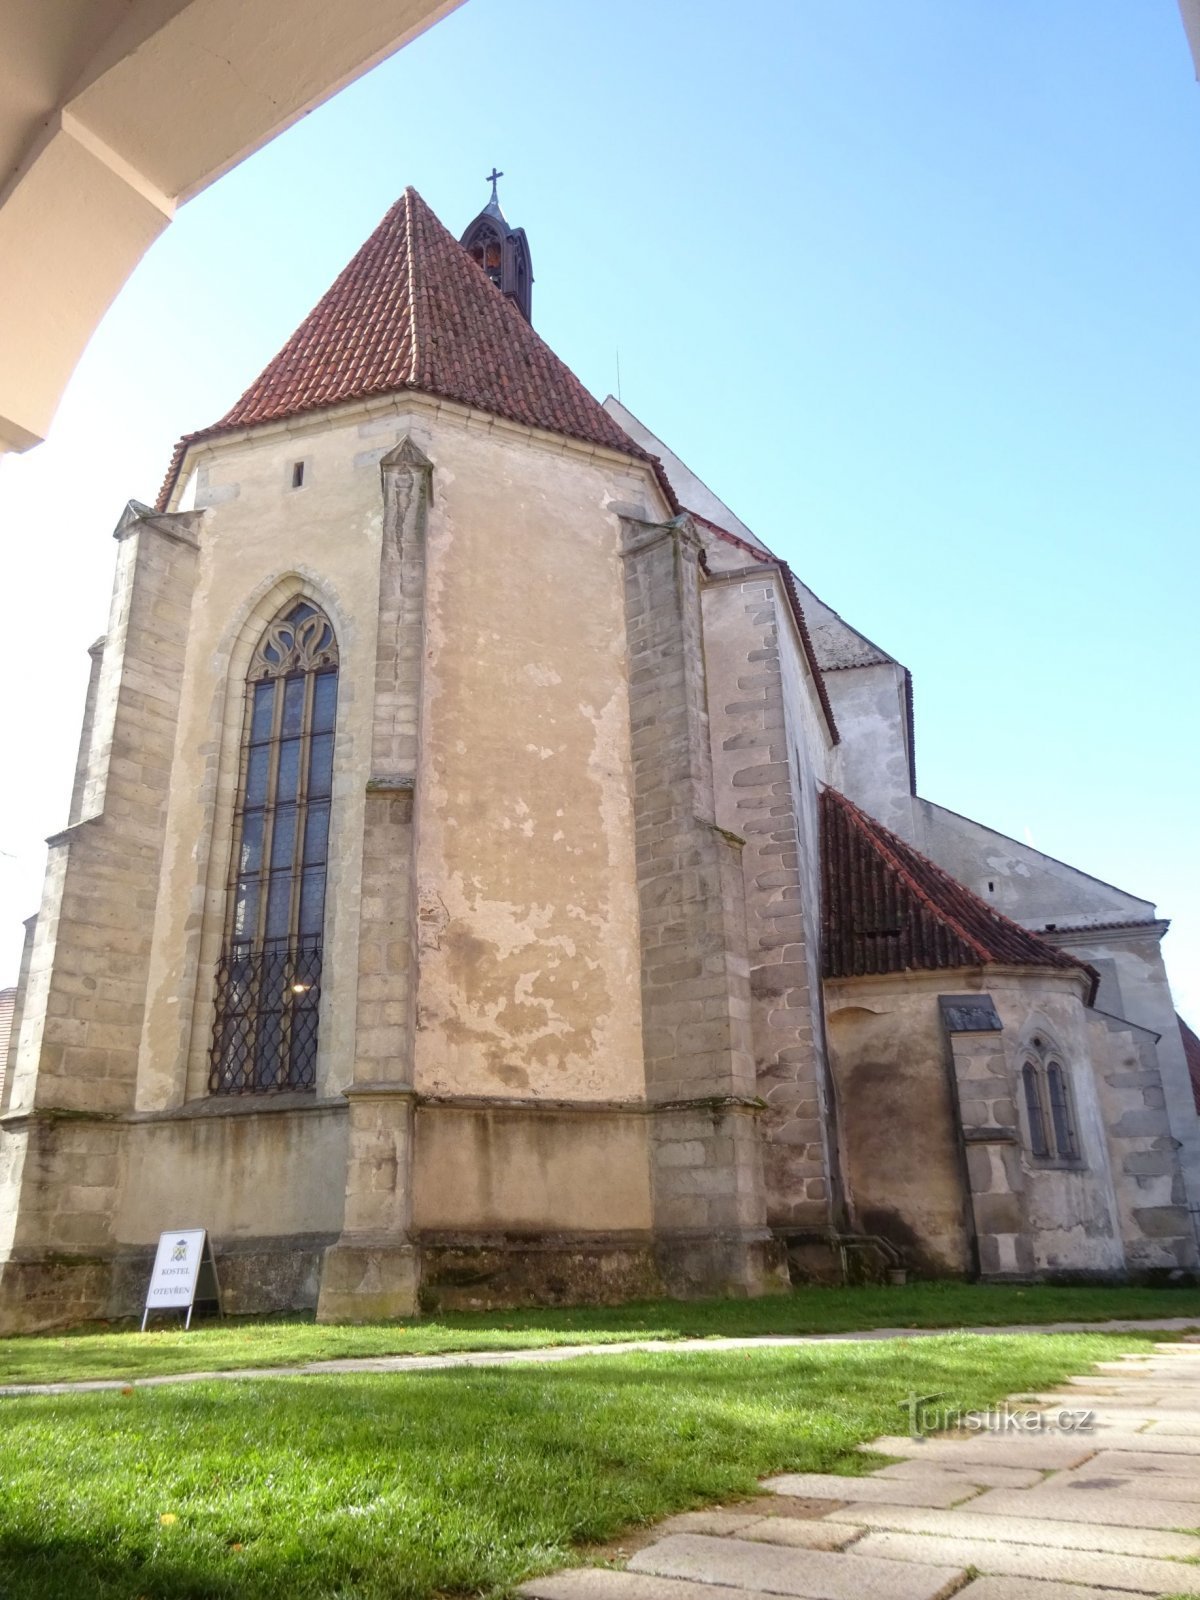 Blatná et l'église de l'Assomption de la Vierge Marie près du château